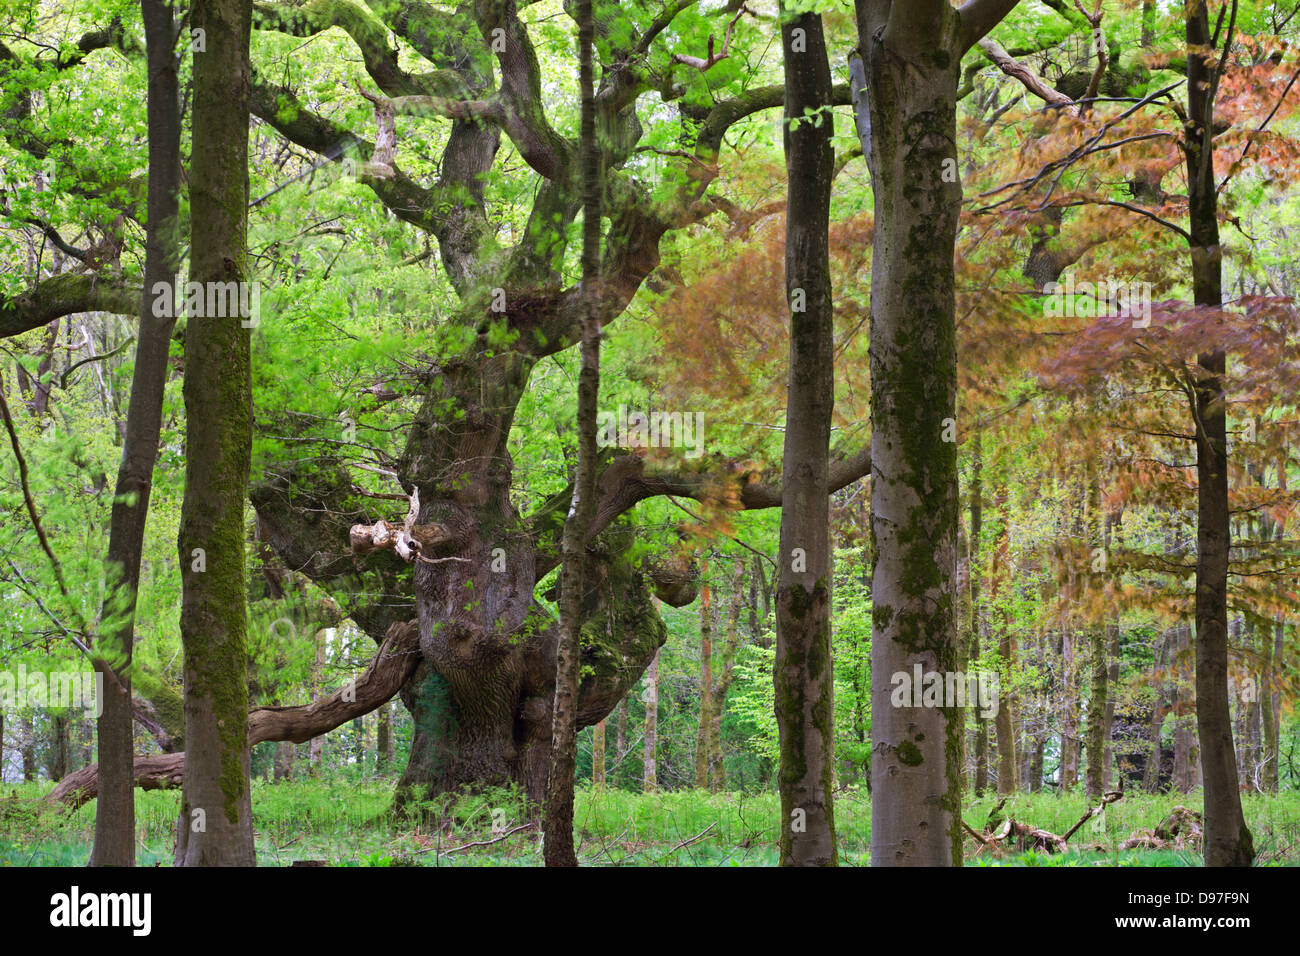 Eine uralte Eiche Baum tief in den Wäldern am Savernake Forest, Marlborough, Wiltshire, England. Frühling (Mai). Stockfoto